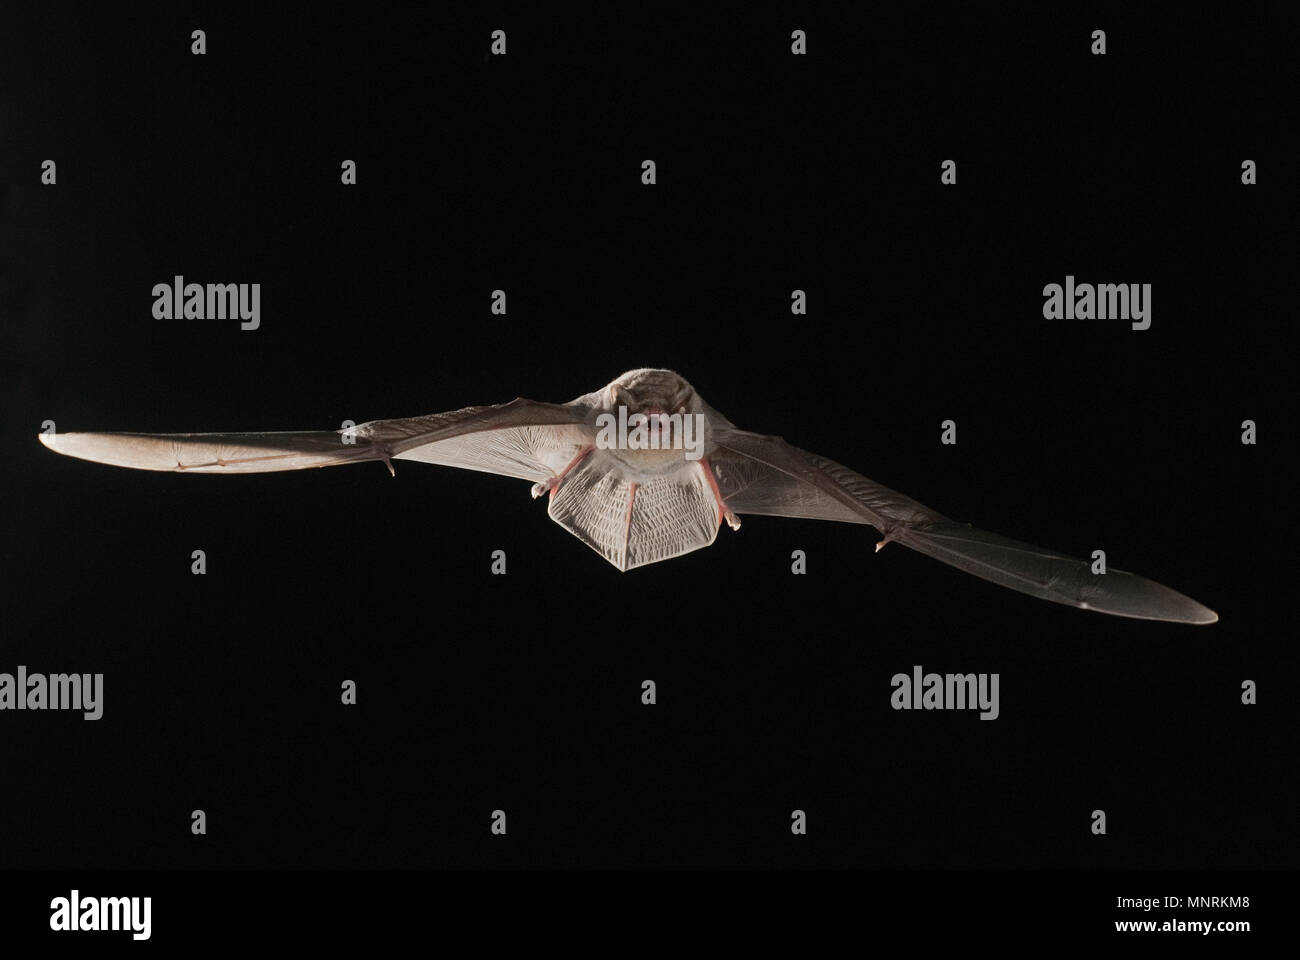 Bat comune piegata Miniopterus schreibersii, volare in una grotta, con sfondo nero Foto Stock